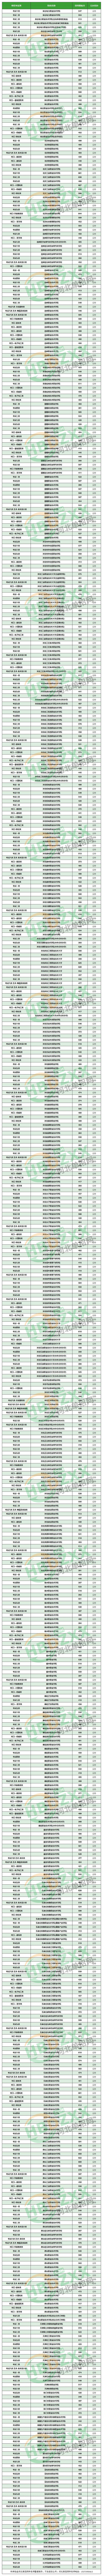 2023年河北省高职单招公办单招学校分数线 图1